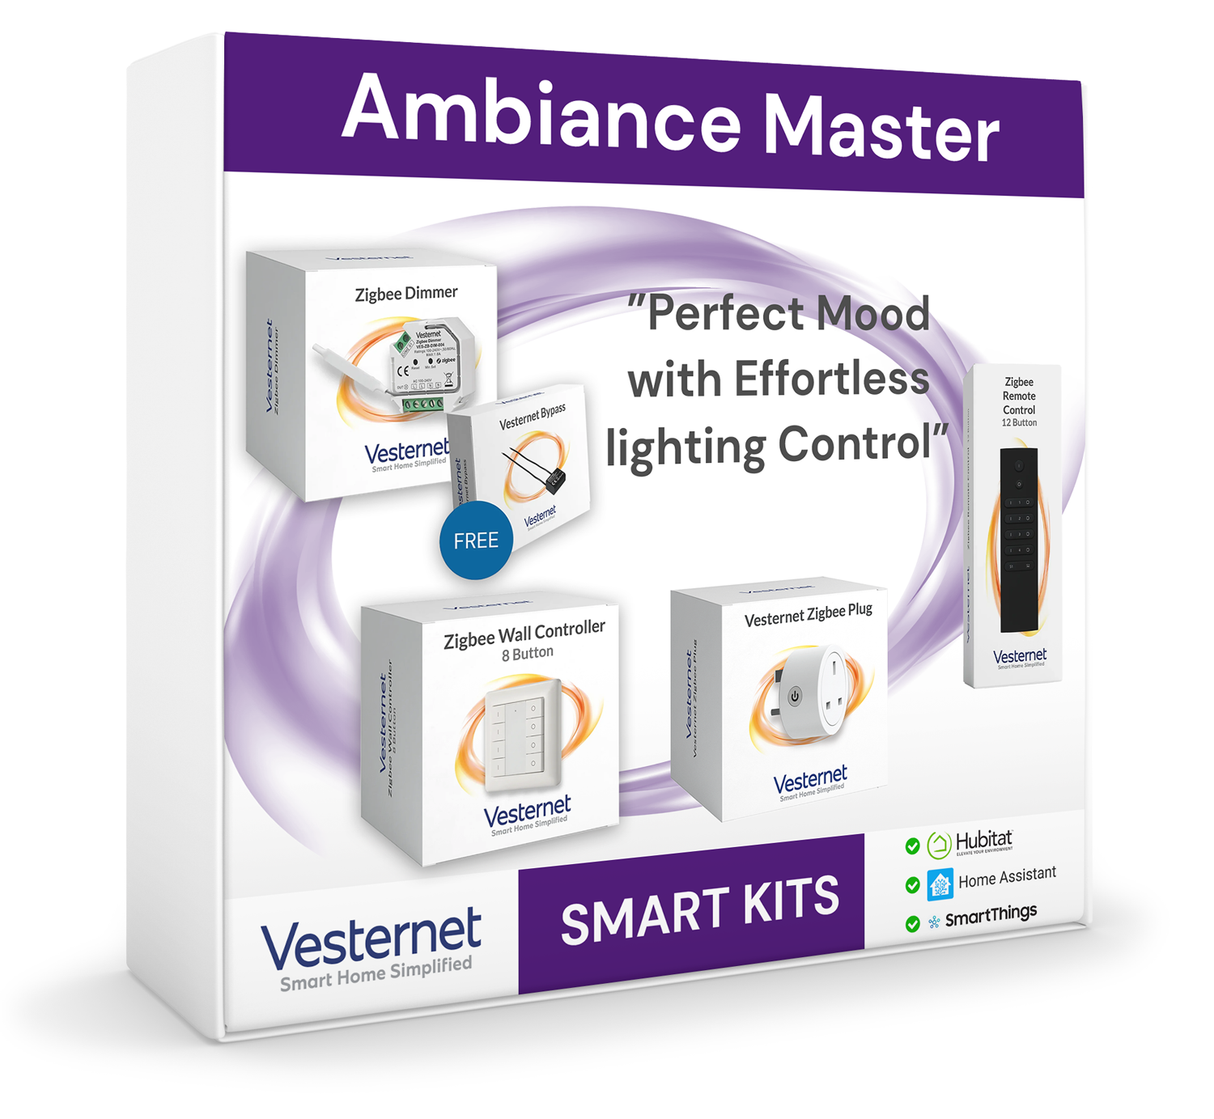 Ambiance Master: Zestaw inteligentnego oświetlenia zapewniający doskonałą kontrolę nastroju